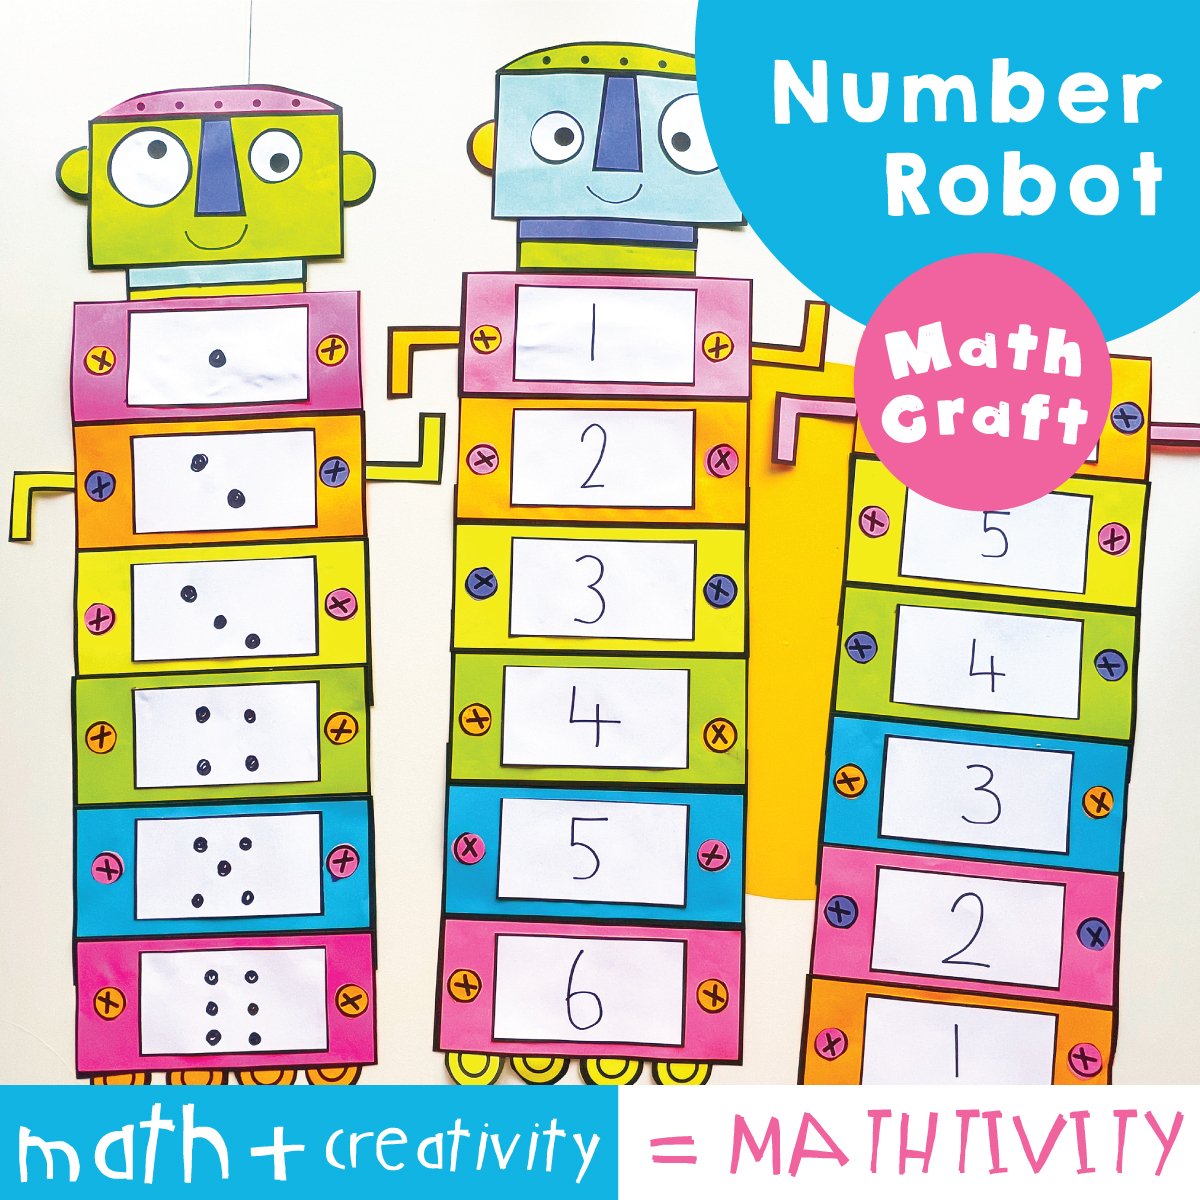 Robot Math Craft